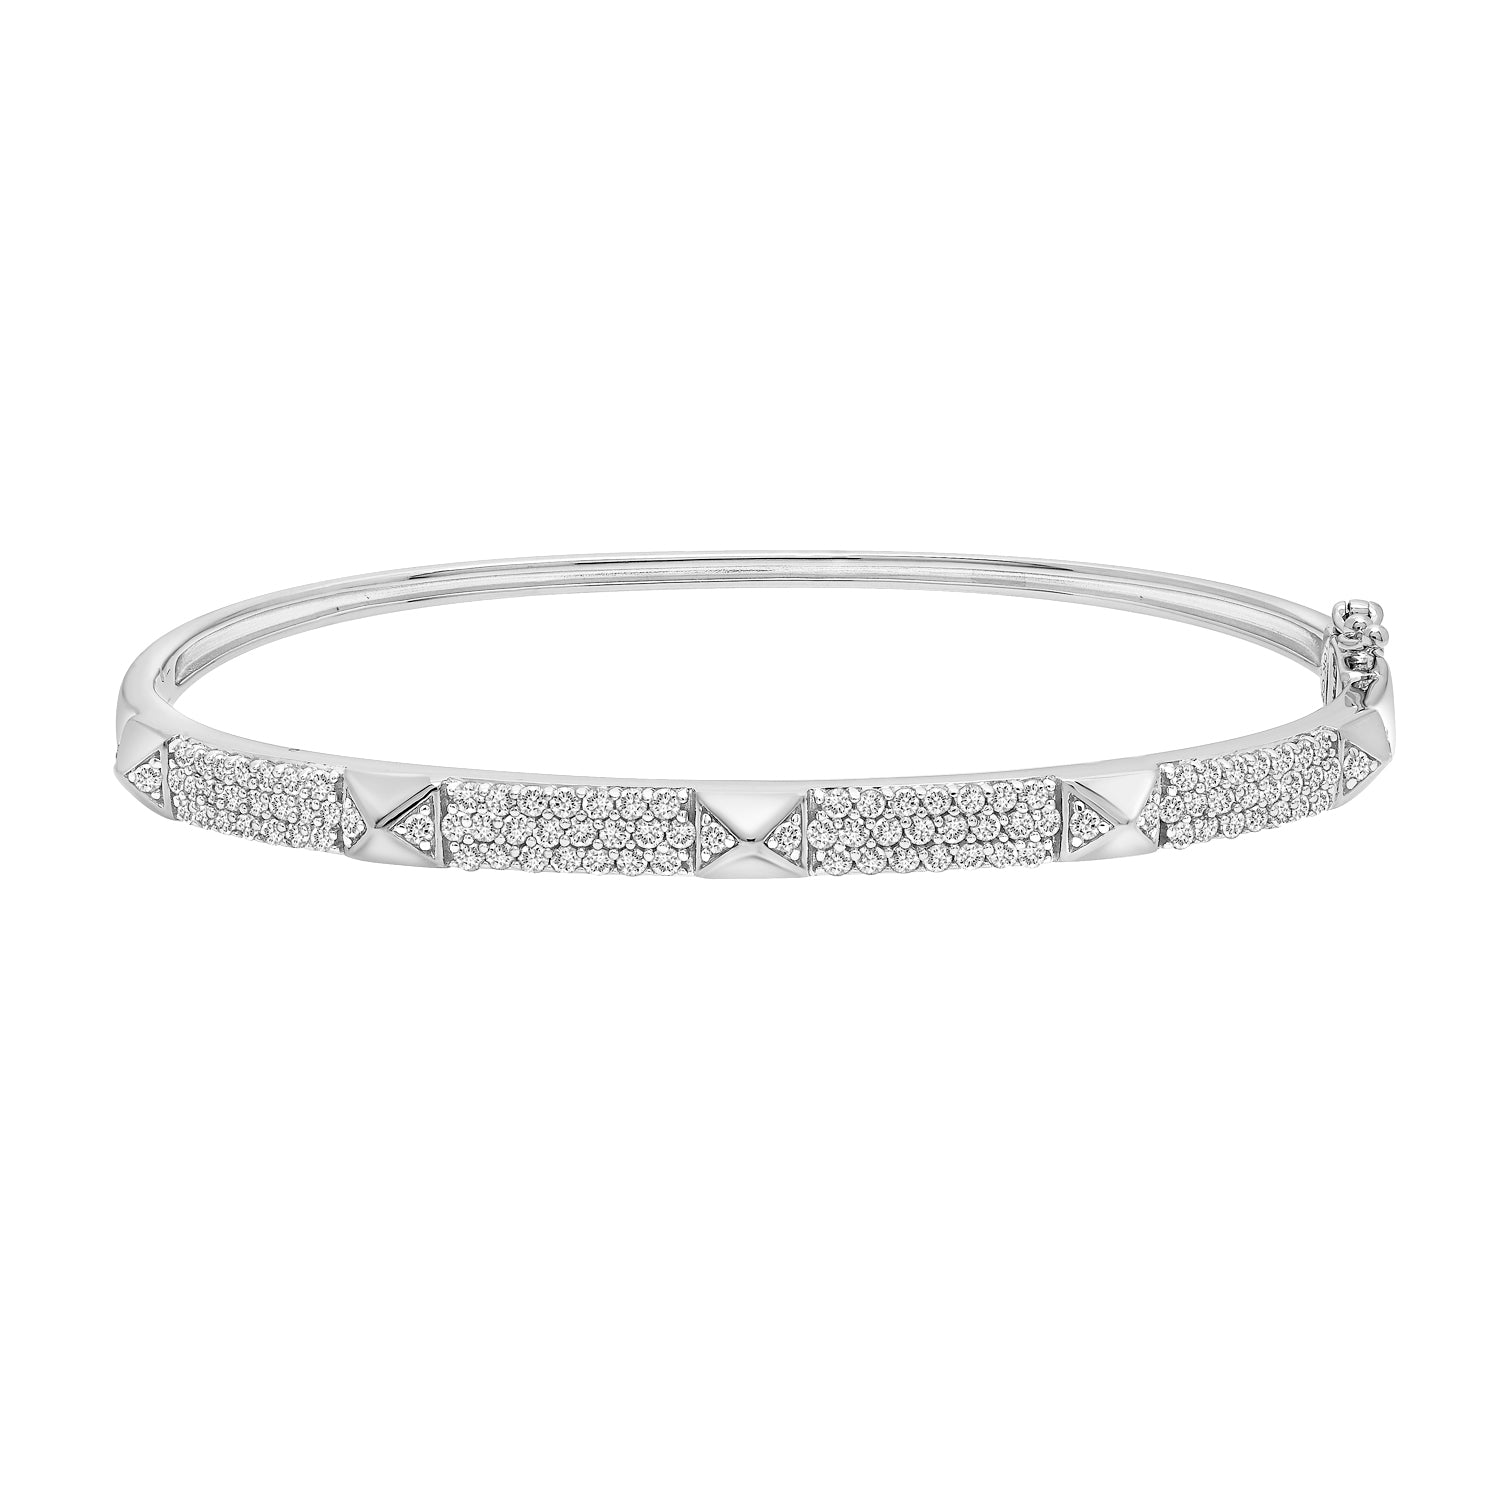 Beatrice Diamond Bangle Bracelet in Silver